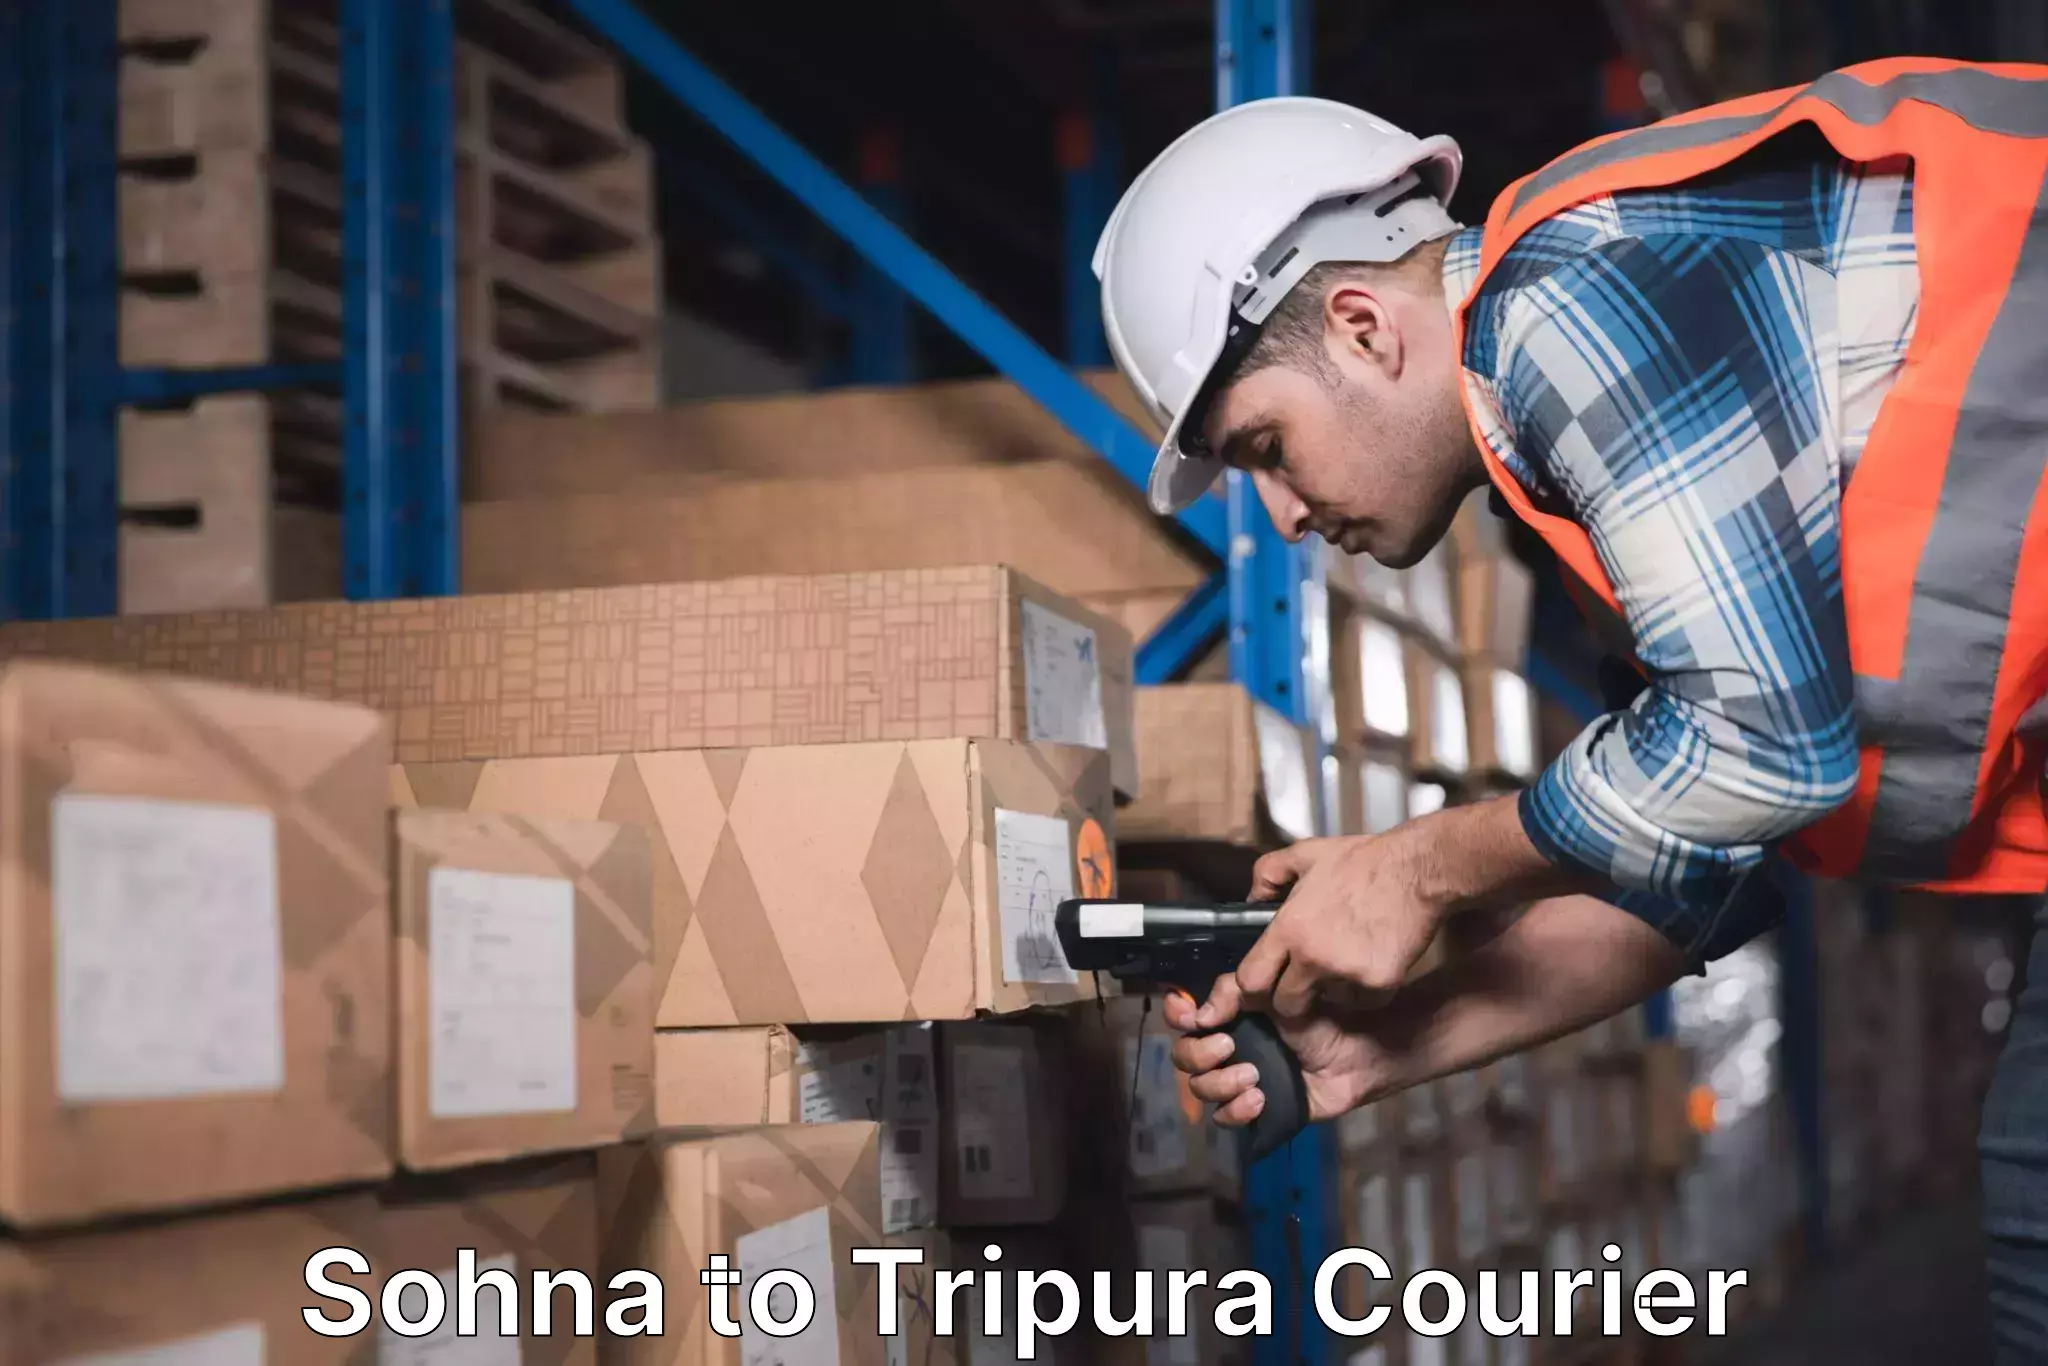 Digital courier platforms Sohna to Teliamura